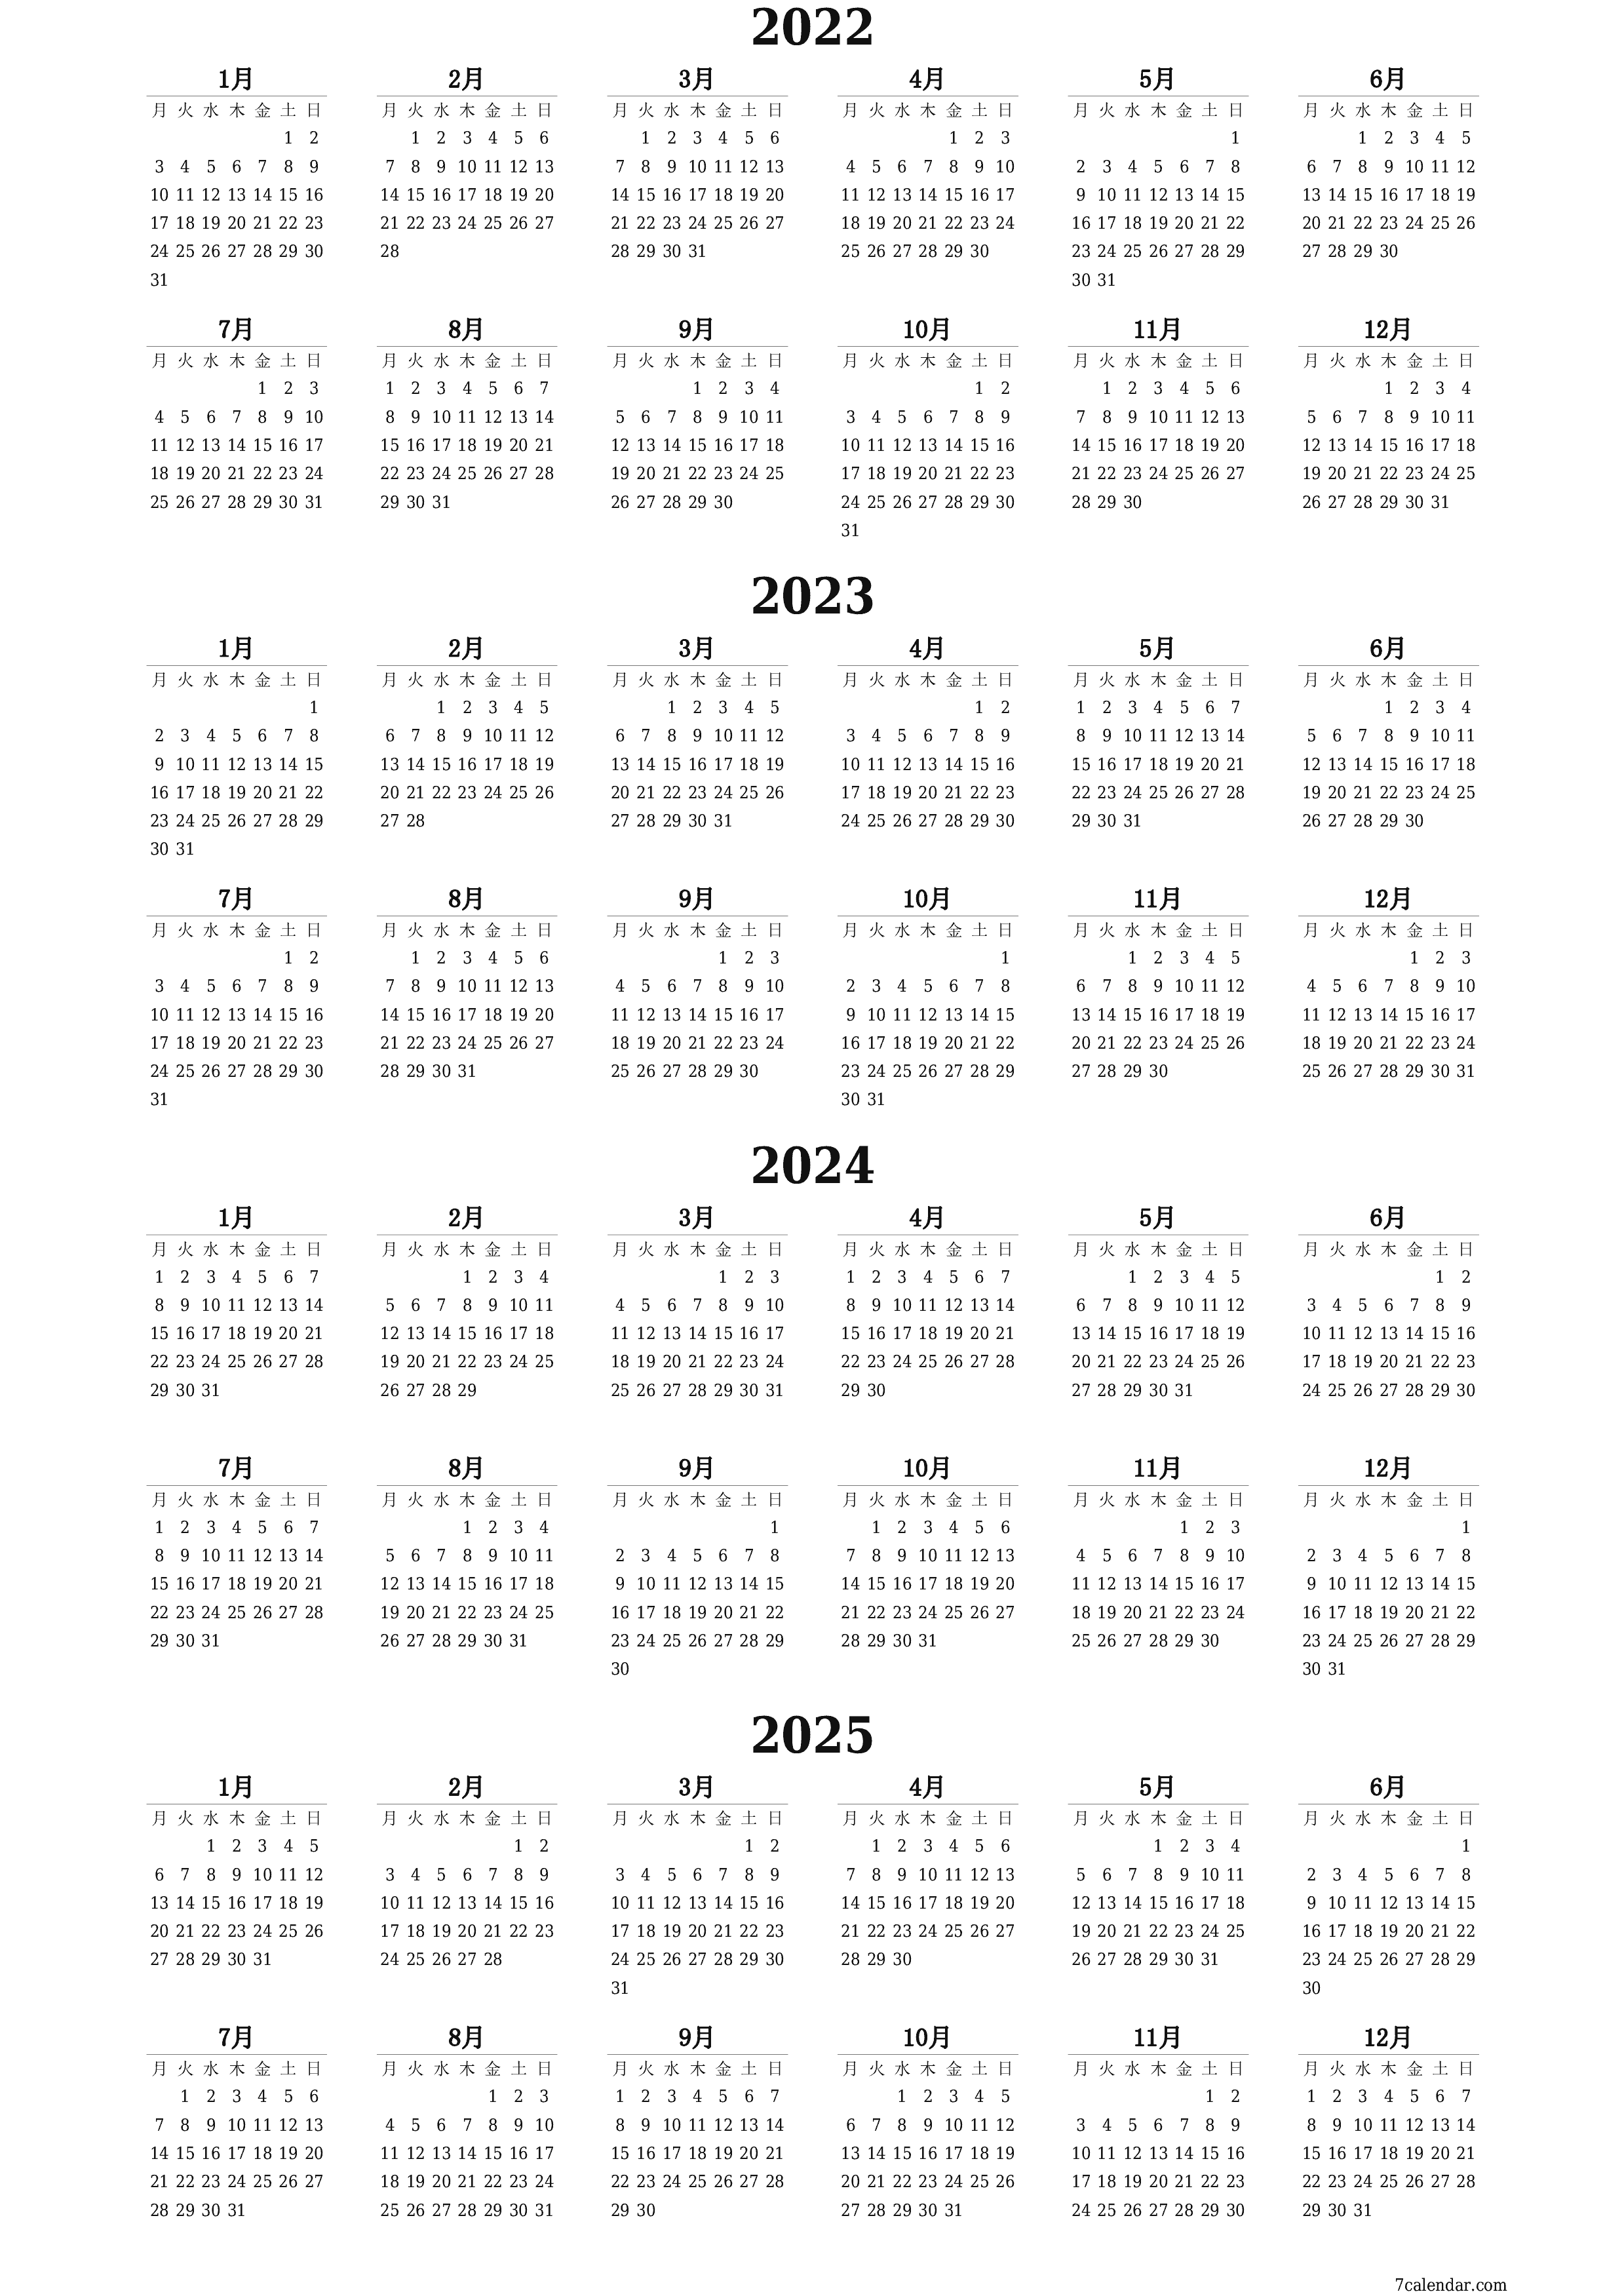 メモ付きの2022, 2023, 2024, 2025年の空の年間プランナーカレンダー、保存してPDFに印刷PNG Japanese - 7calendar.com